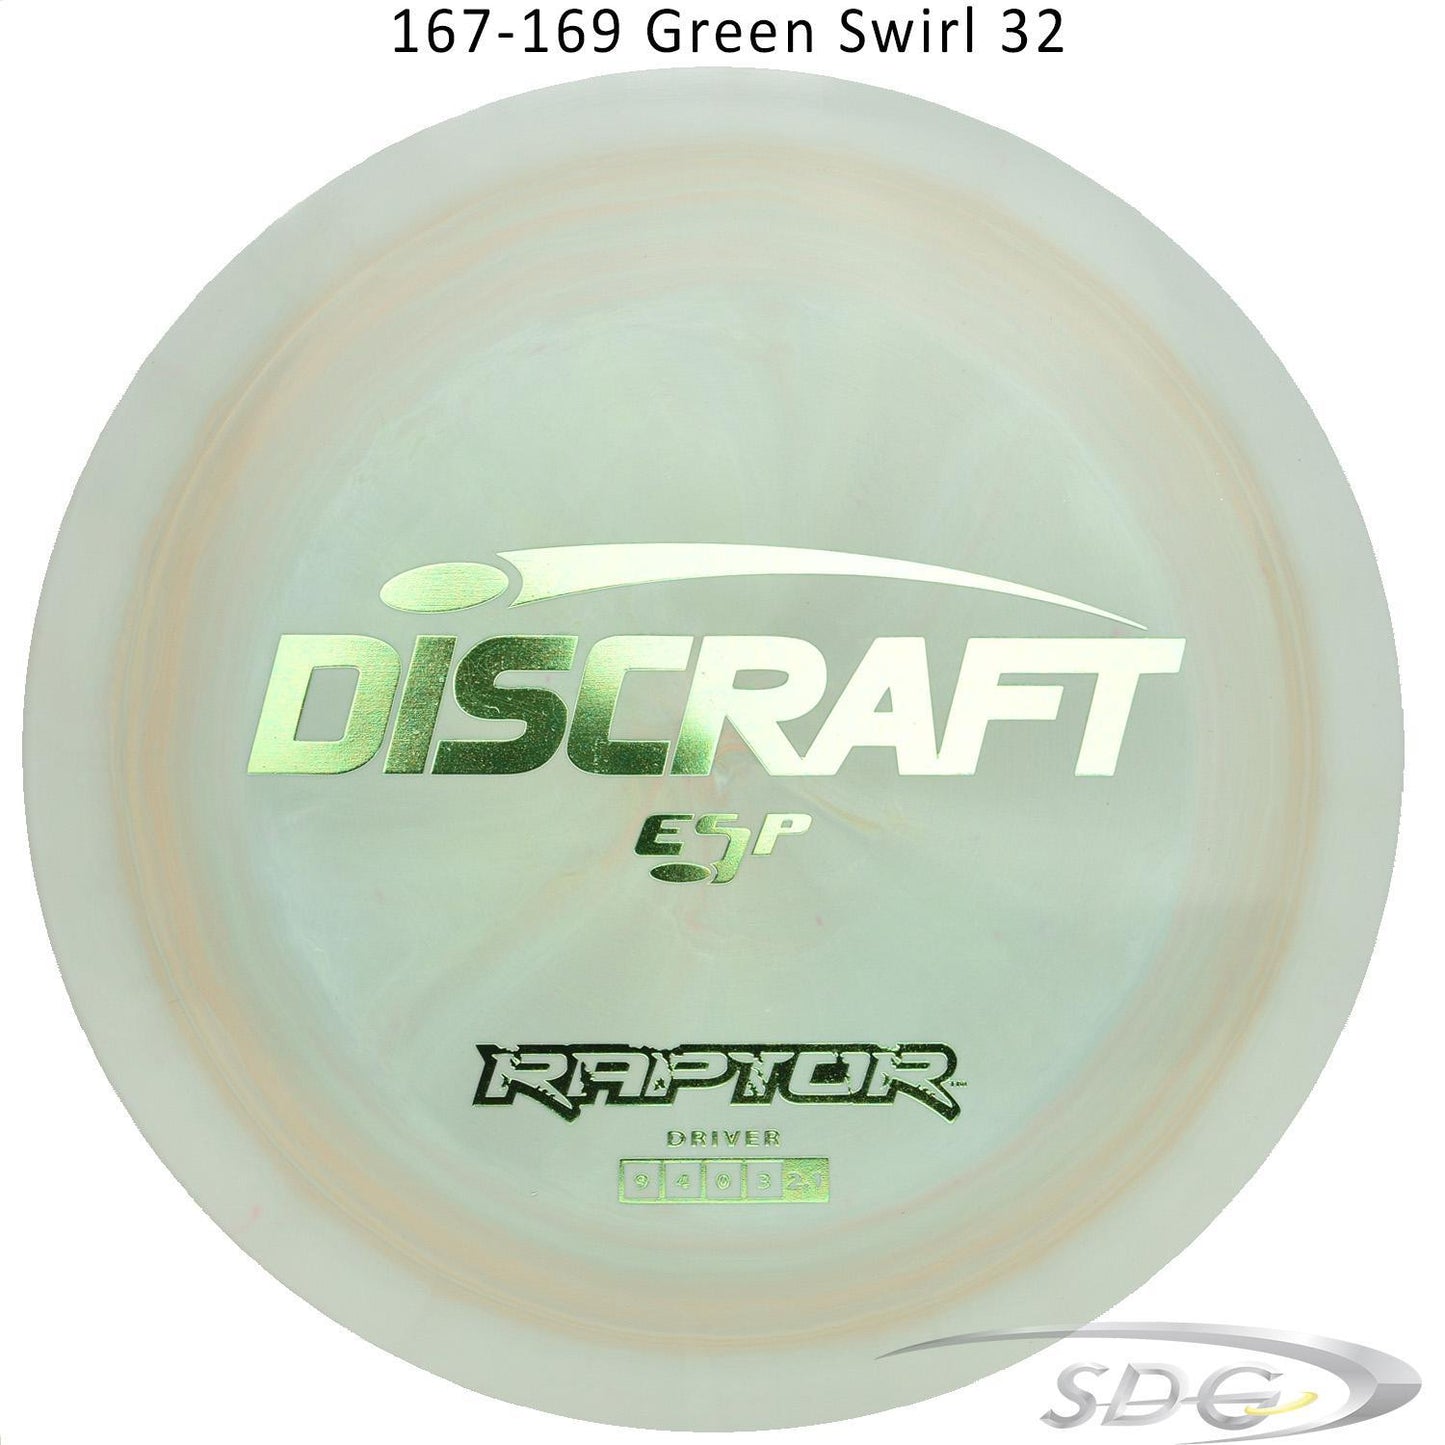 discraft-esp-raptor-disc-golf-distance-driver 167-169 Green Swirl 32 